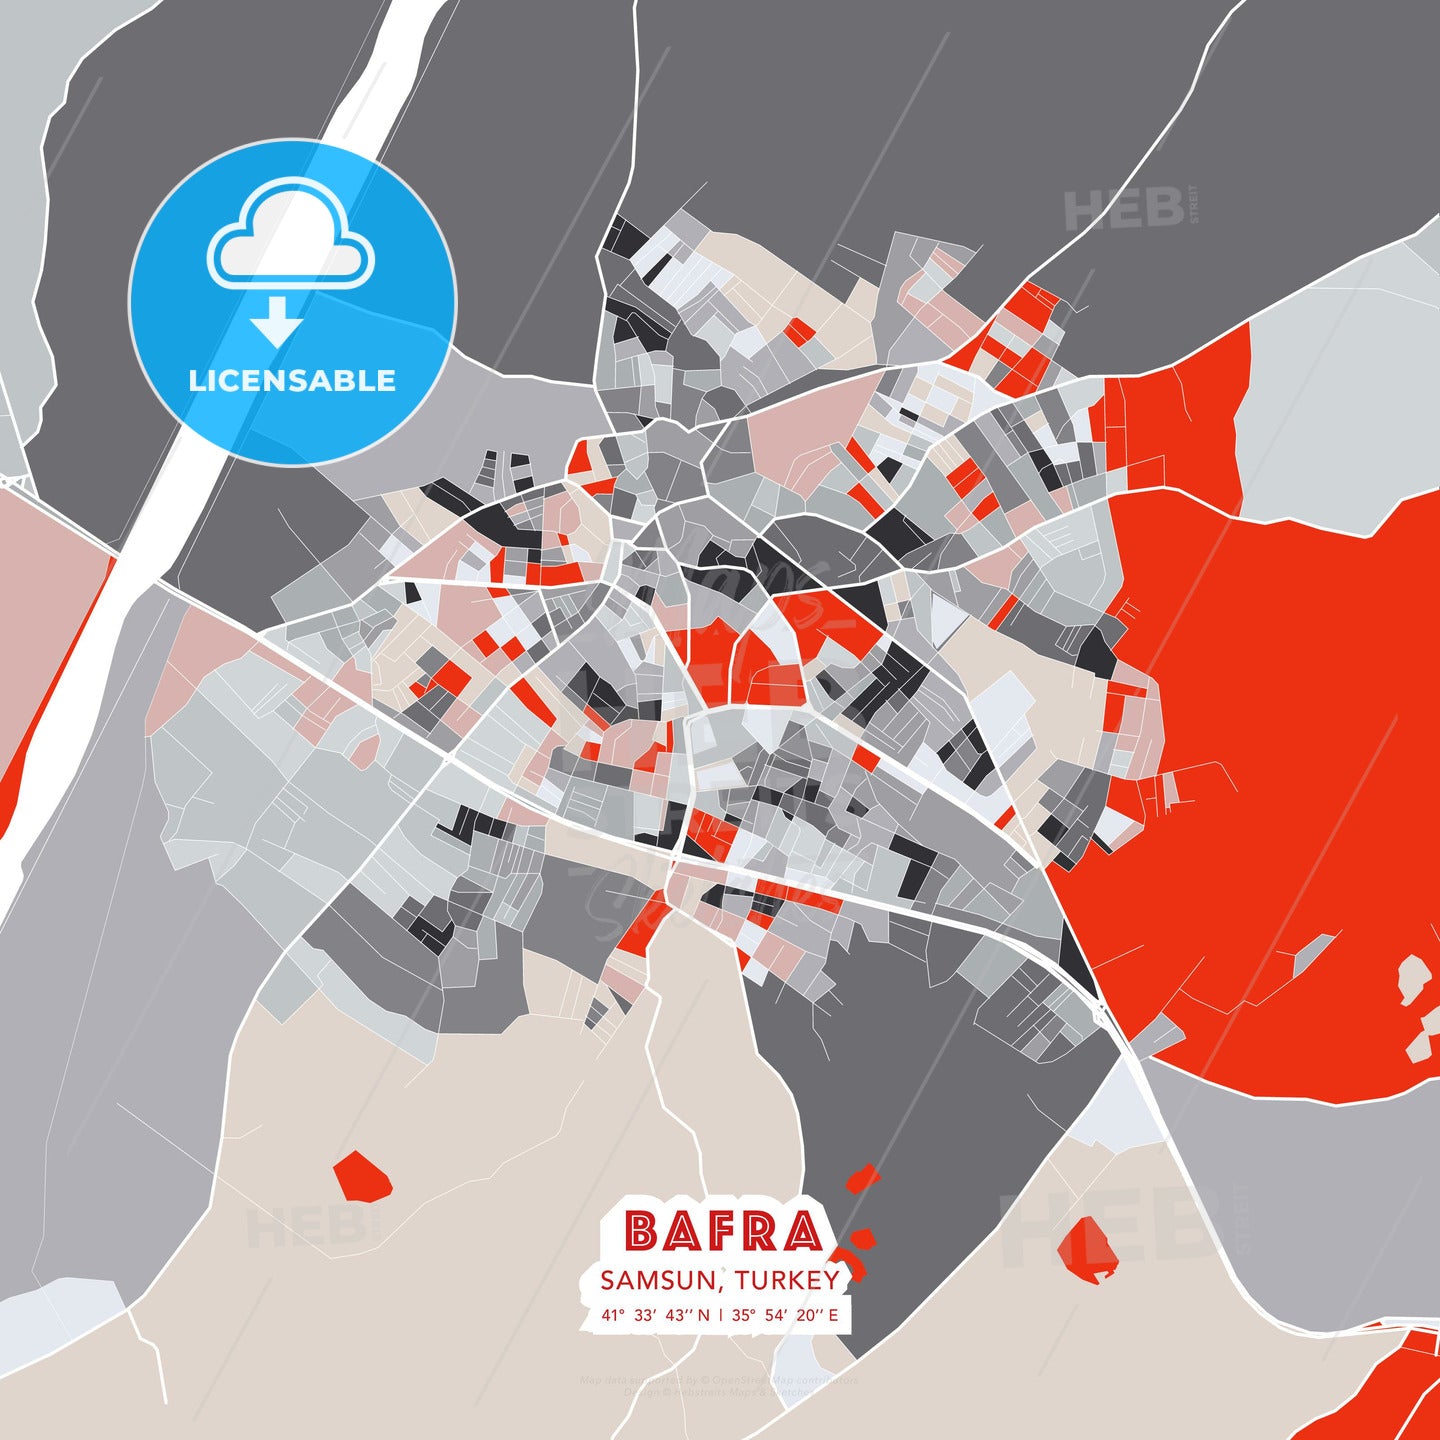 Bafra, Samsun, Turkey, modern map - HEBSTREITS Sketches